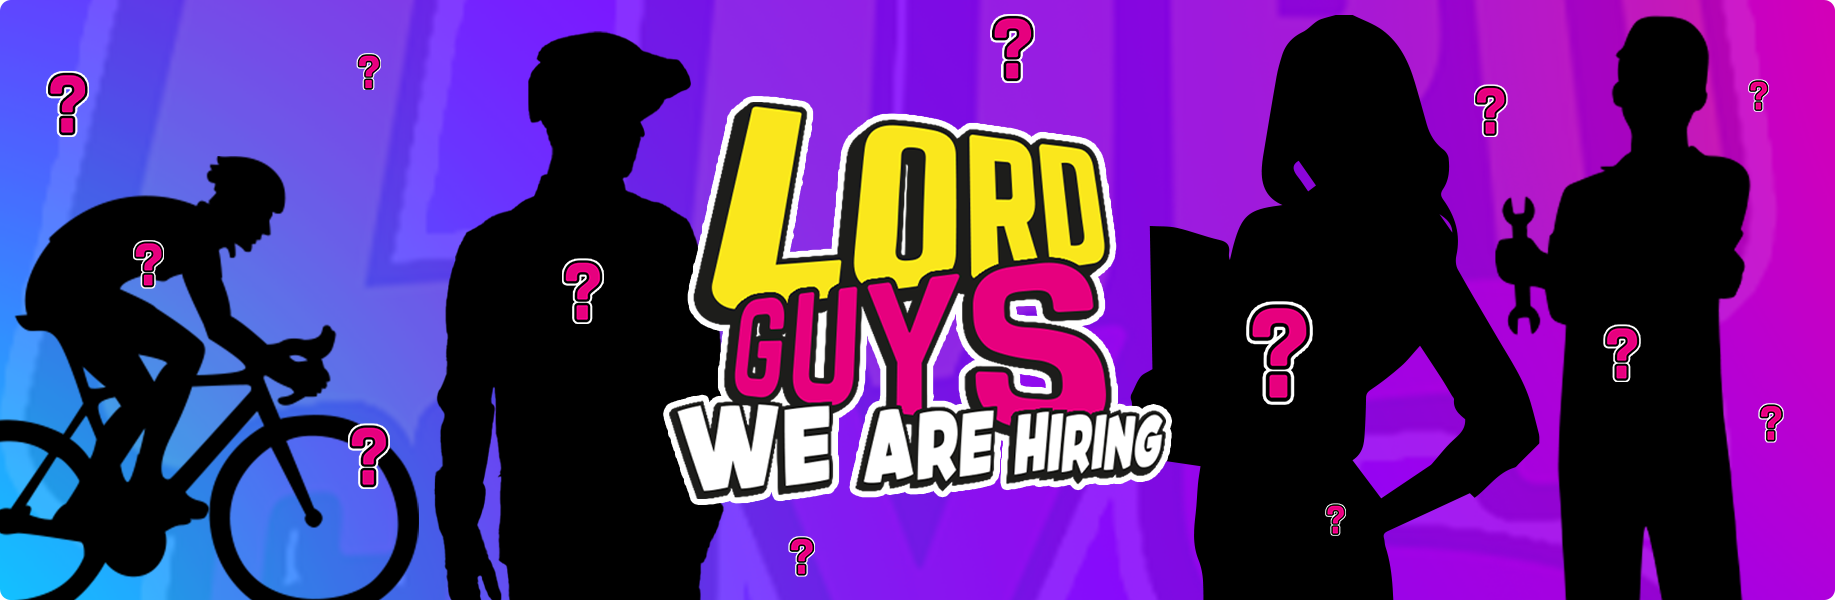 LordGun: ¿Quieres trabajar con nosotros?